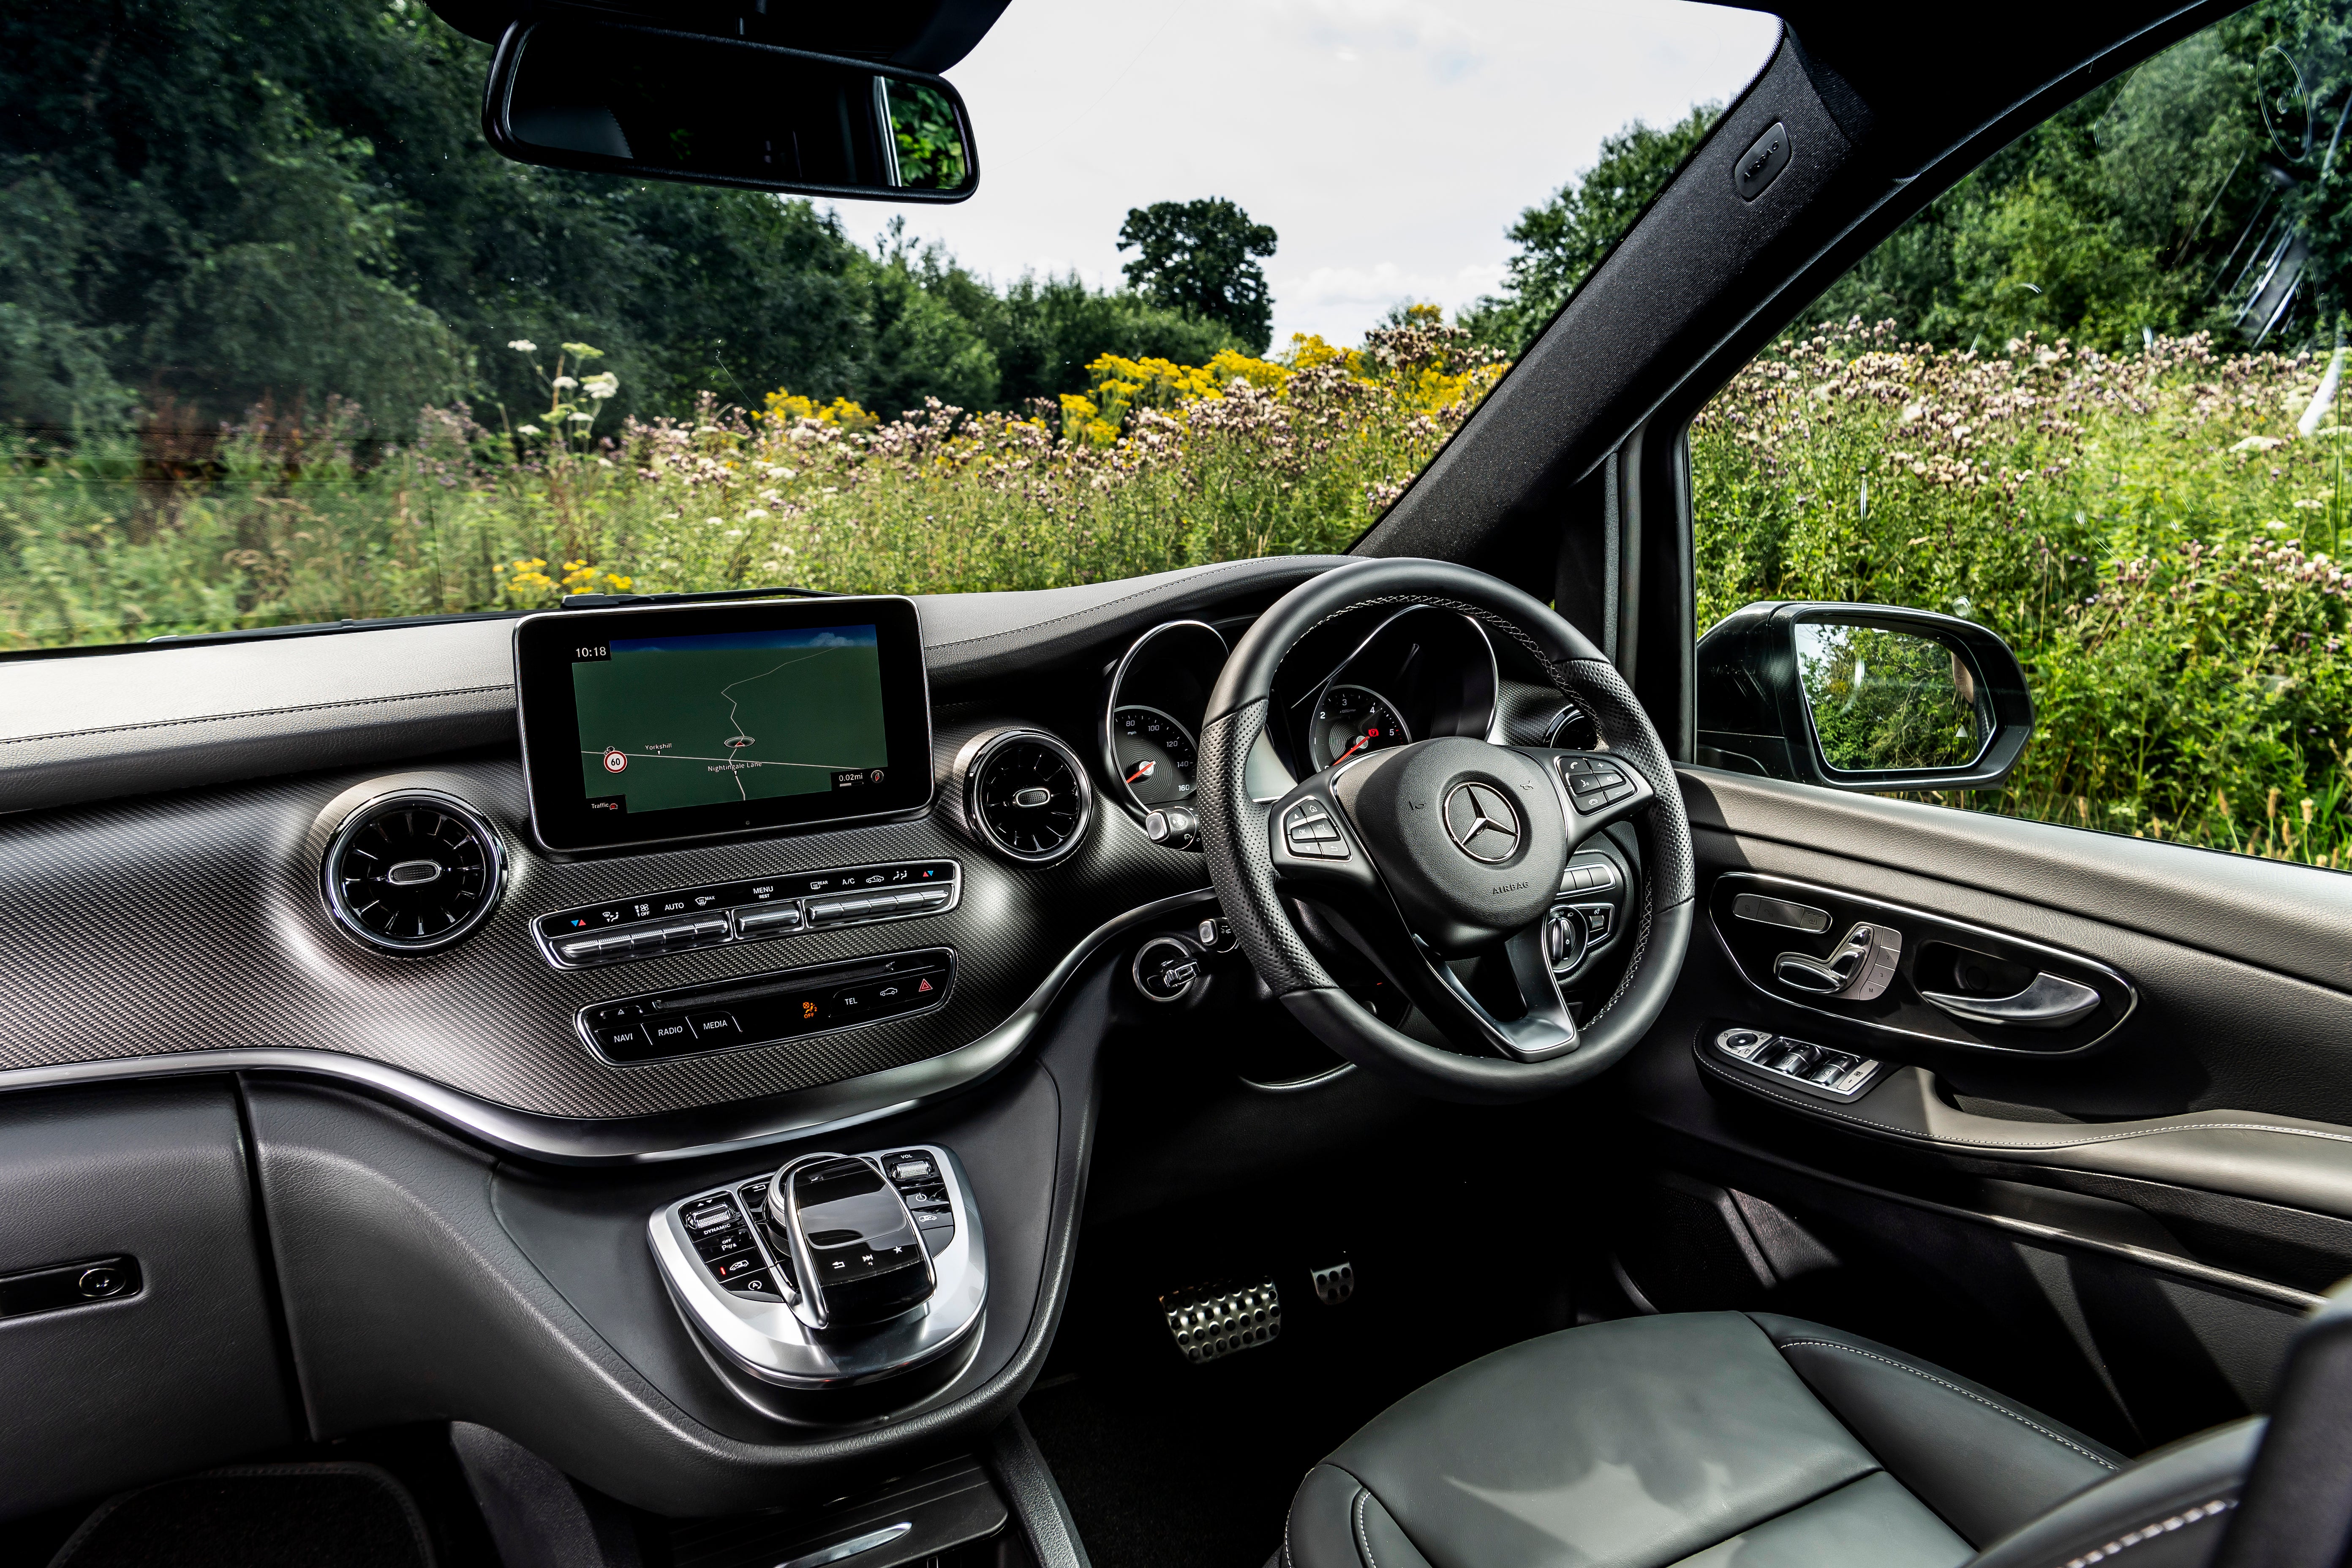 Mercedes V-Class front interior